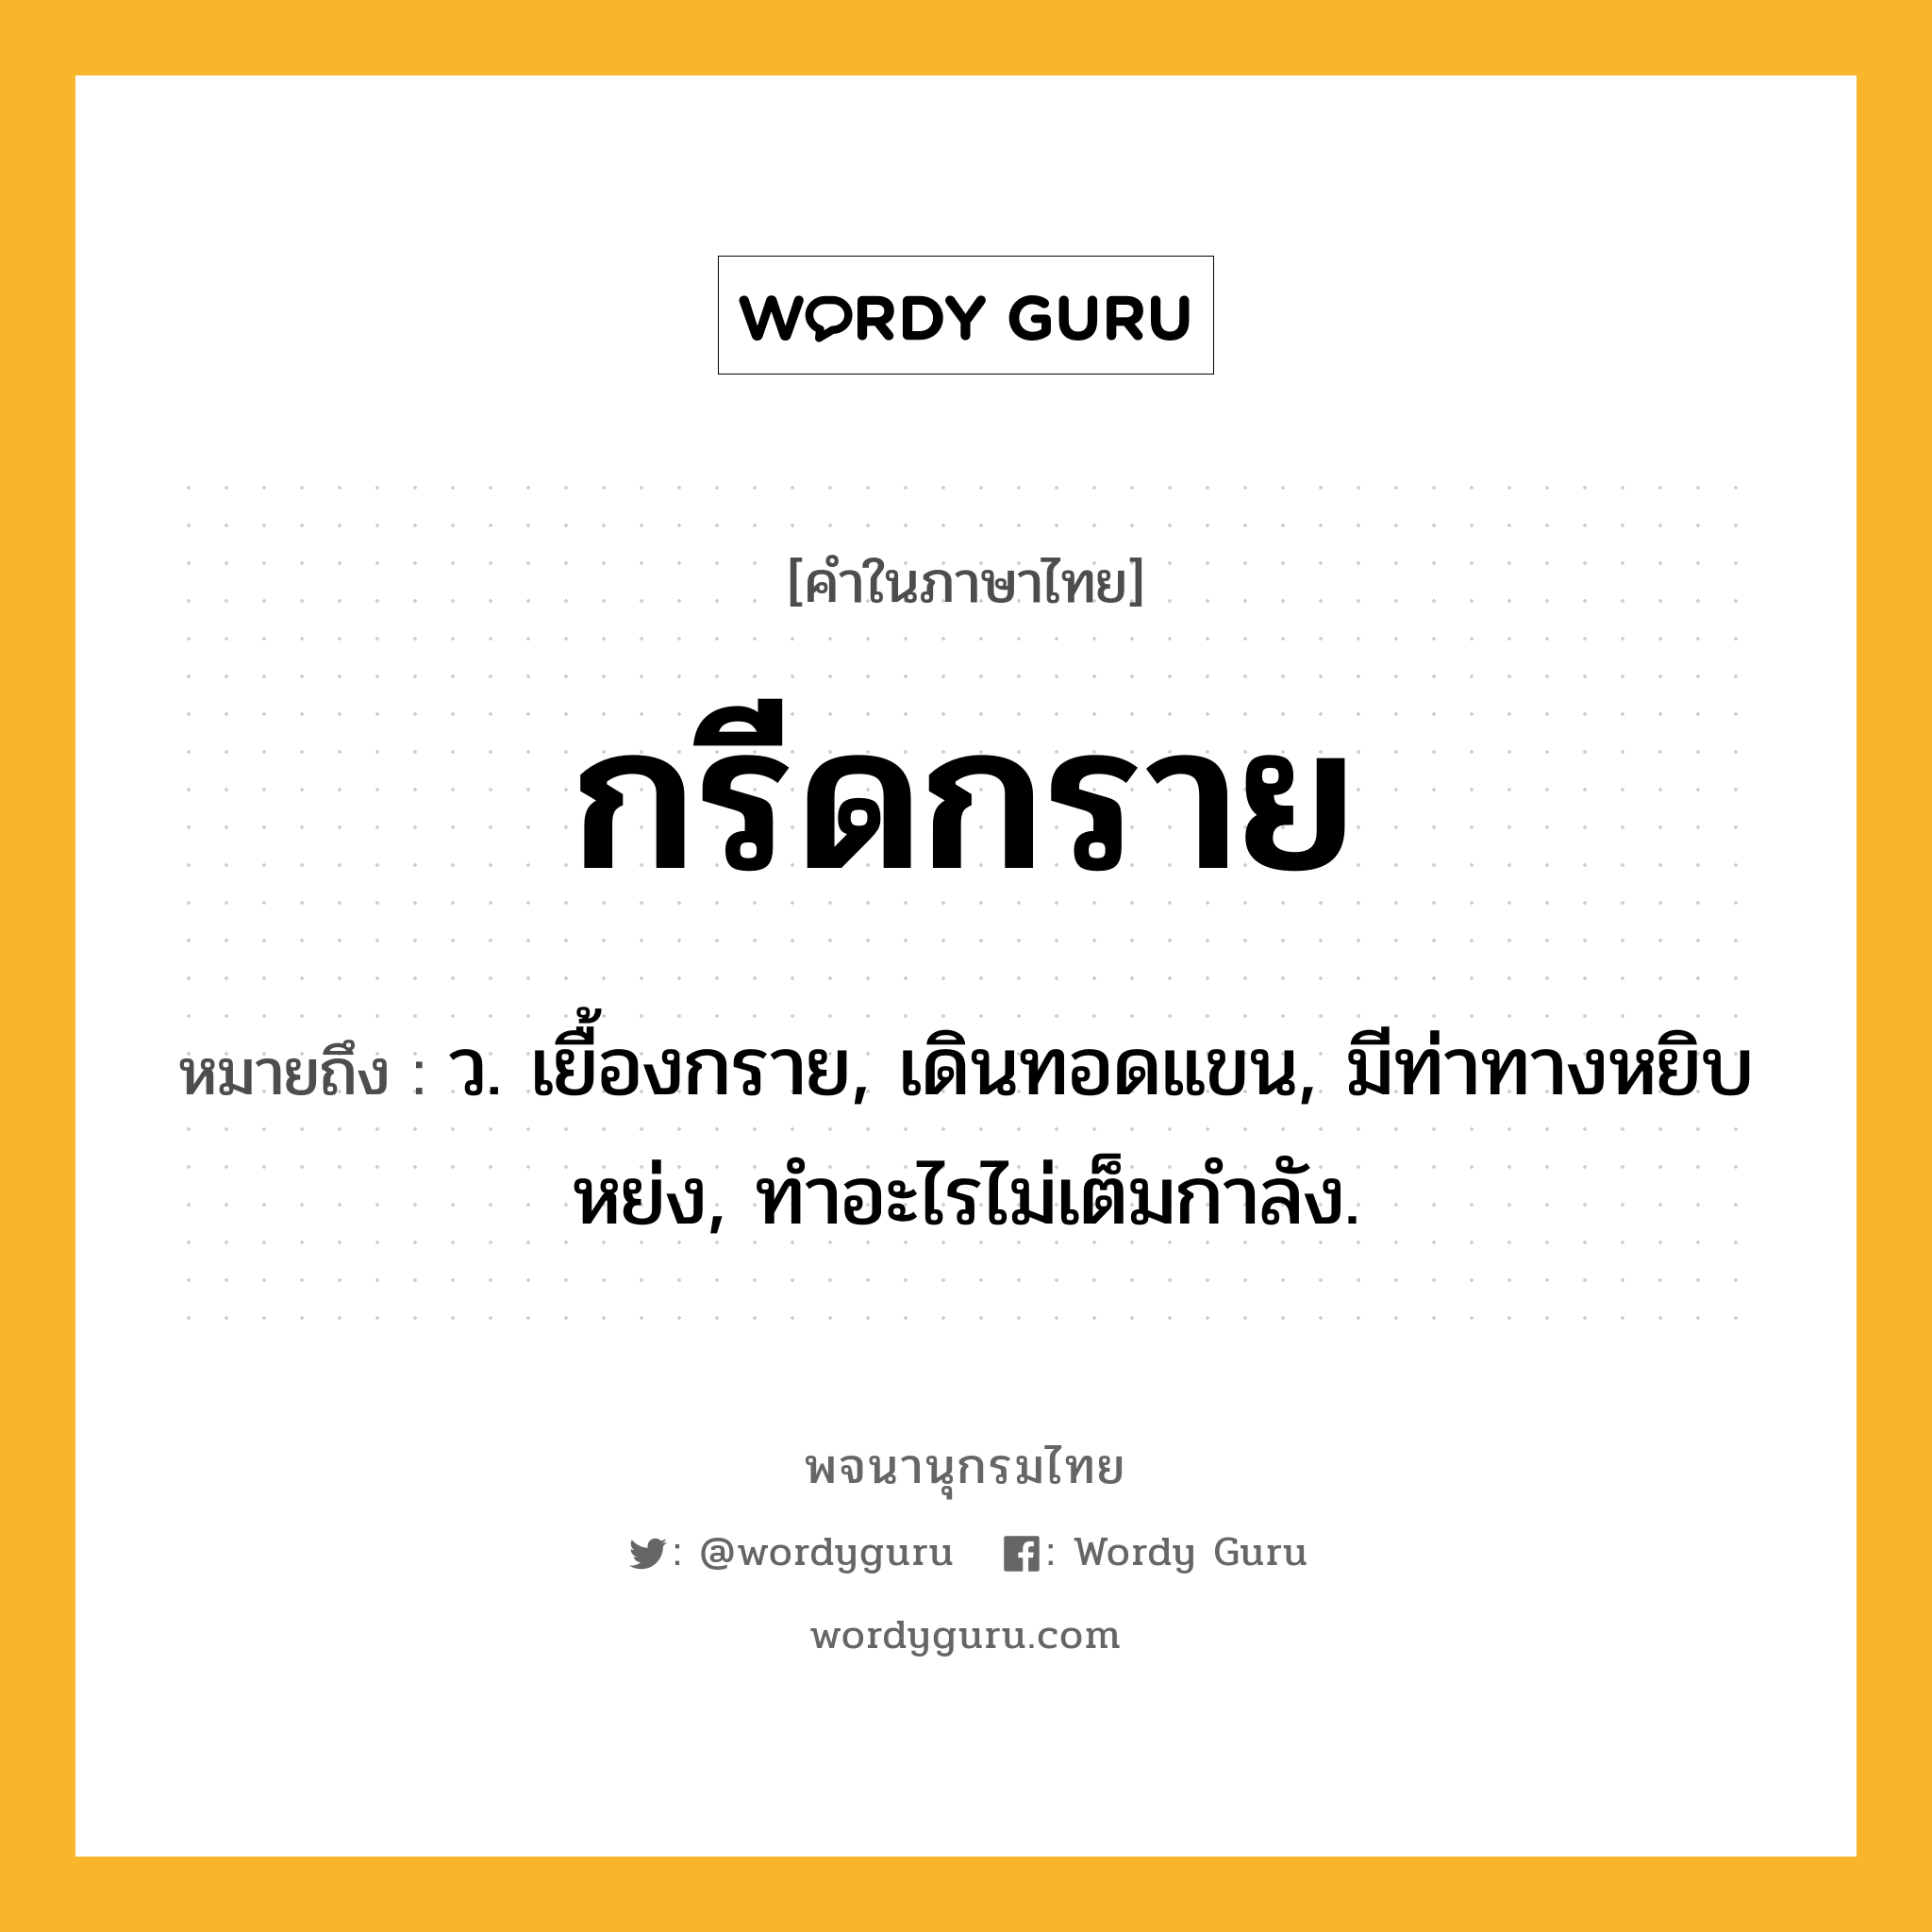 กรีดกราย ความหมาย หมายถึงอะไร?, คำในภาษาไทย กรีดกราย หมายถึง ว. เยื้องกราย, เดินทอดแขน, มีท่าทางหยิบหย่ง, ทำอะไรไม่เต็มกำลัง.